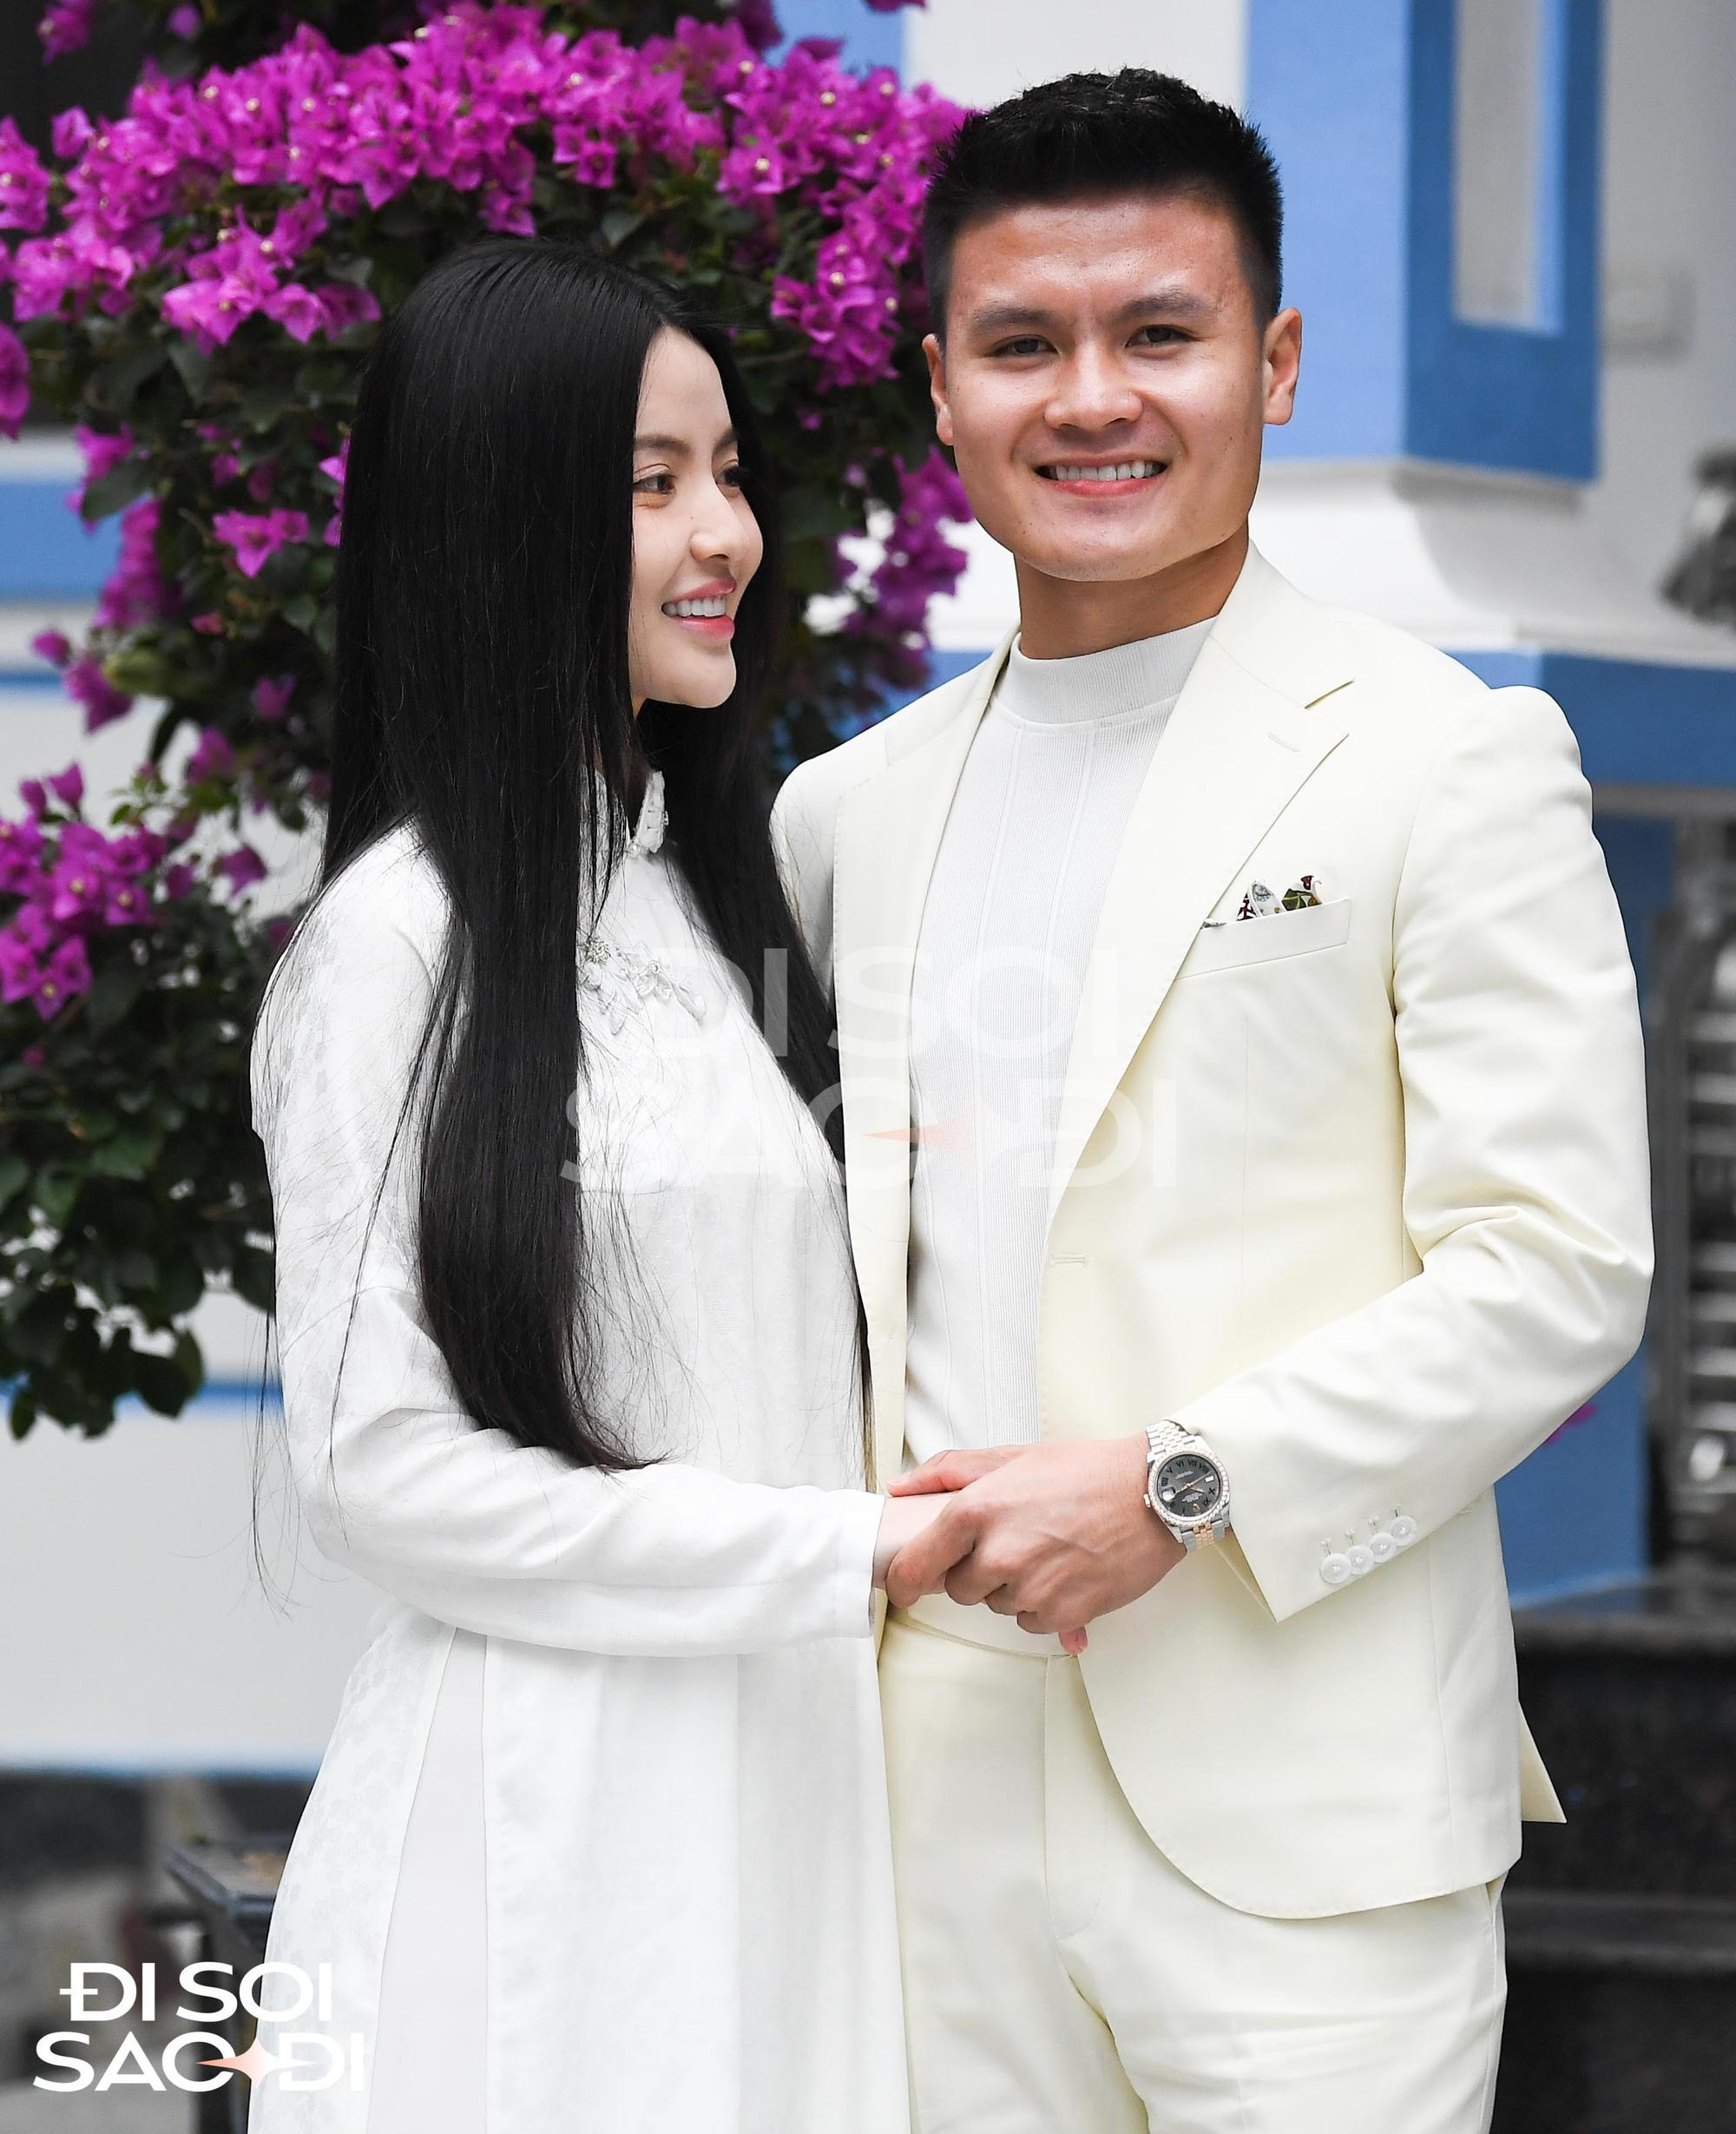 Ảnh độc: Quang Hải rạng rỡ bên Chu Thanh Huyền ở sân nhà cô dâu trong lễ dạm ngõ-3